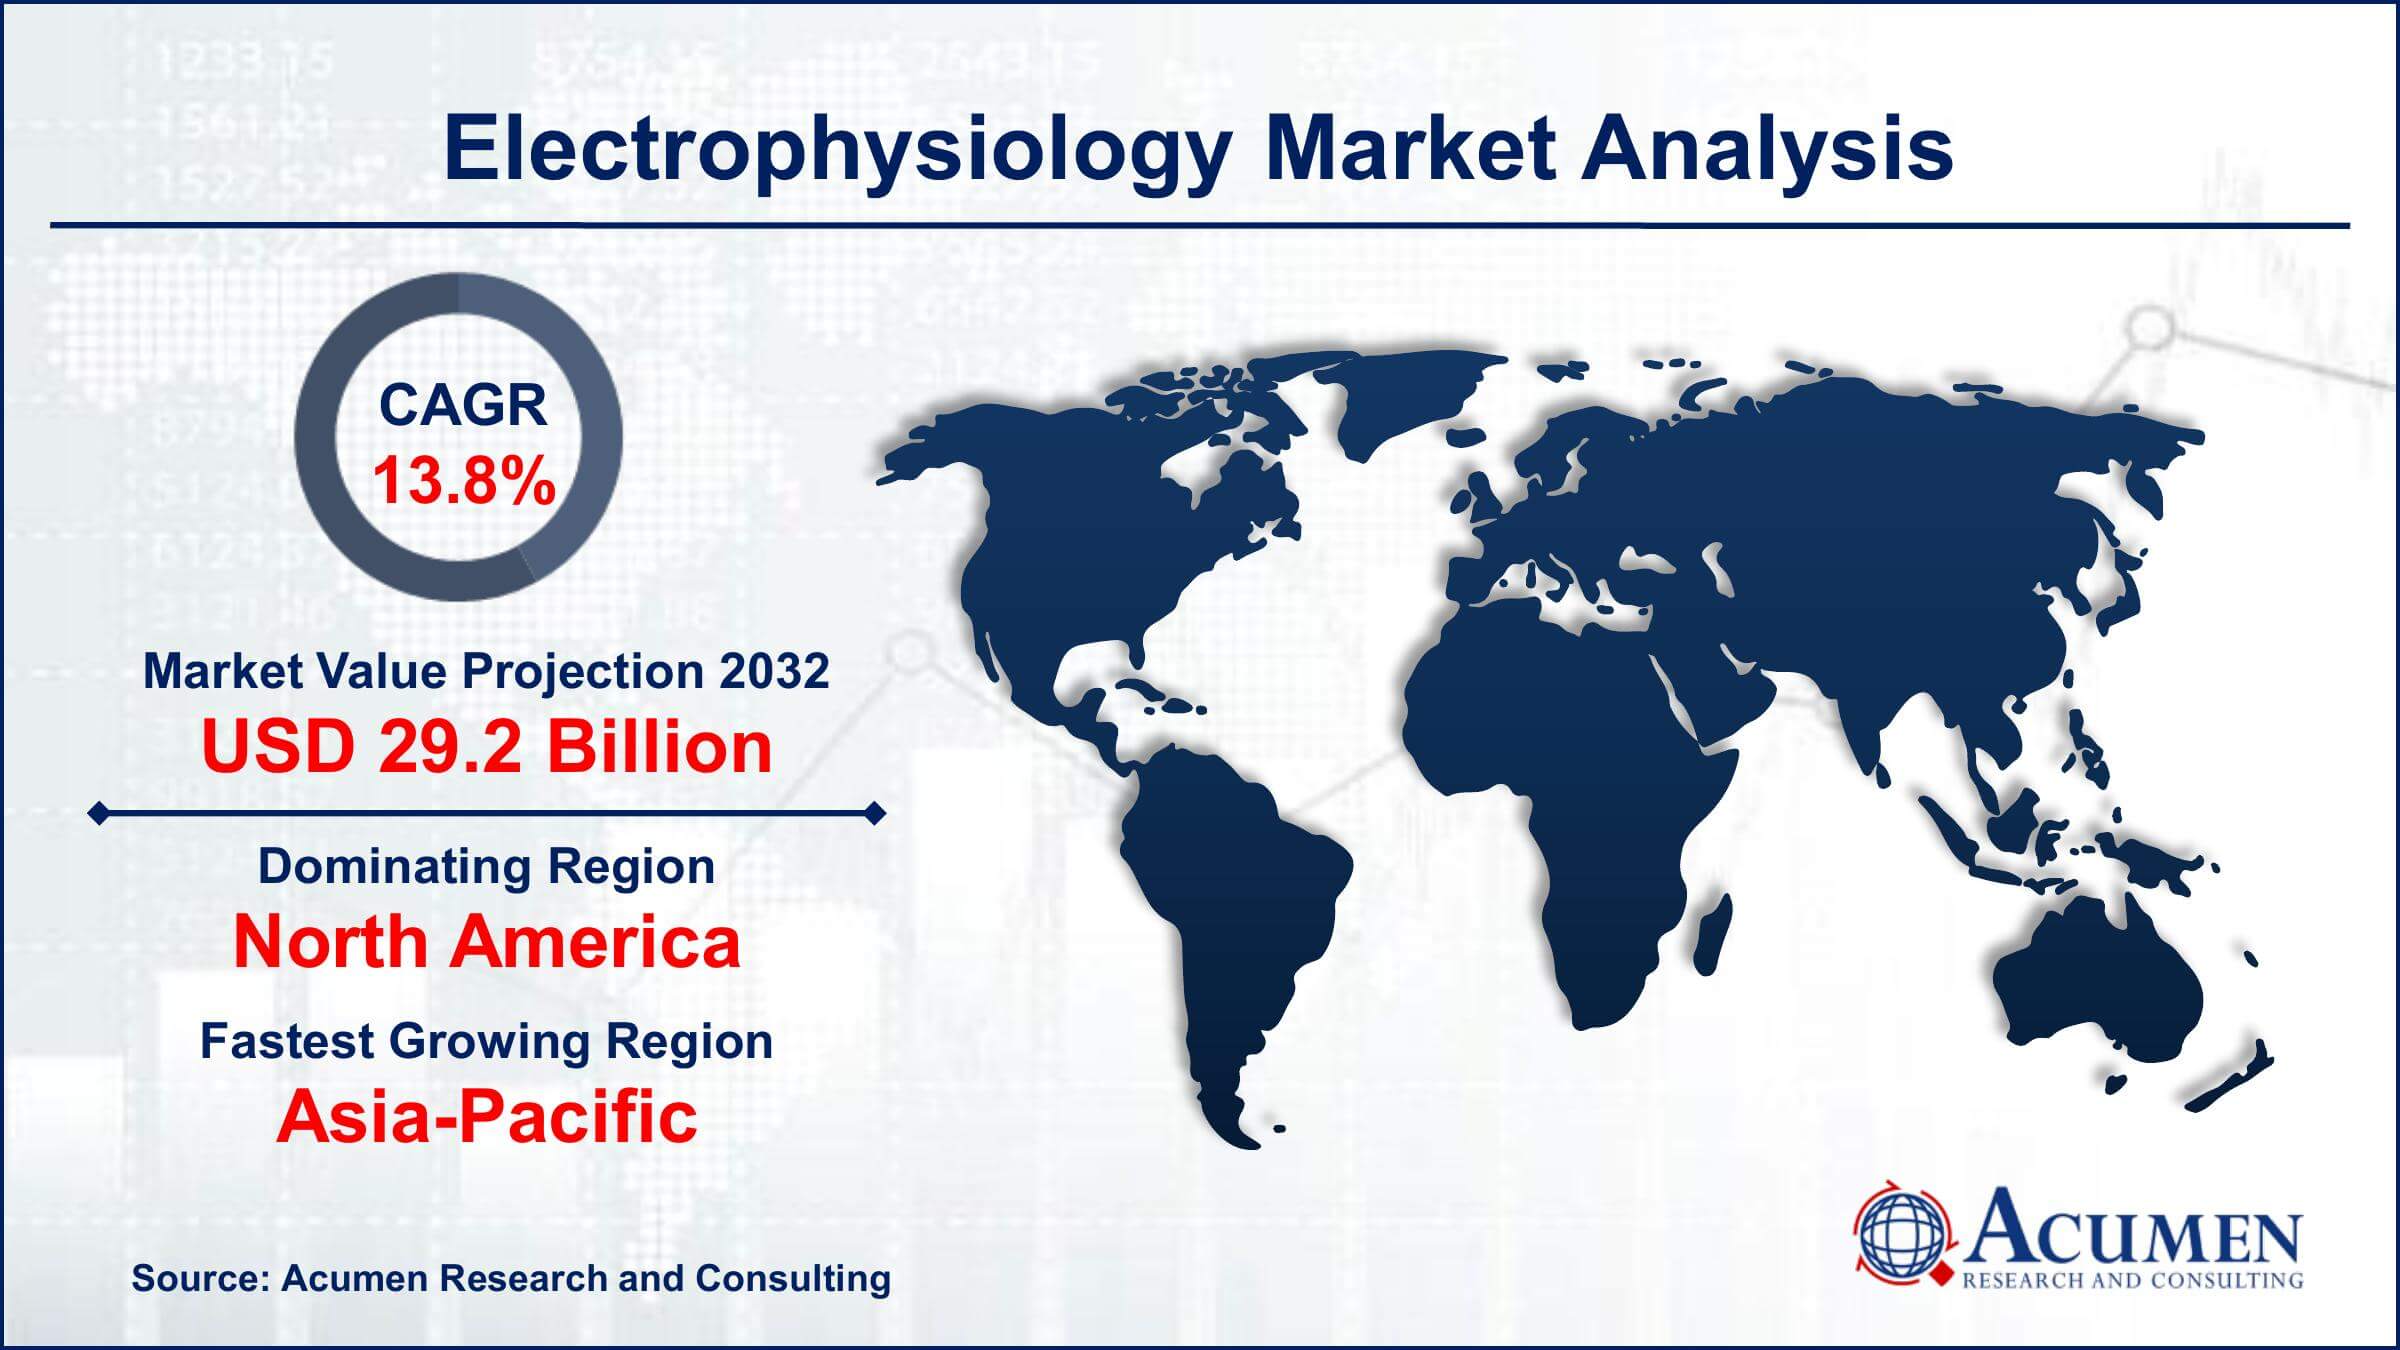 Global Electrophysiology Market Trends